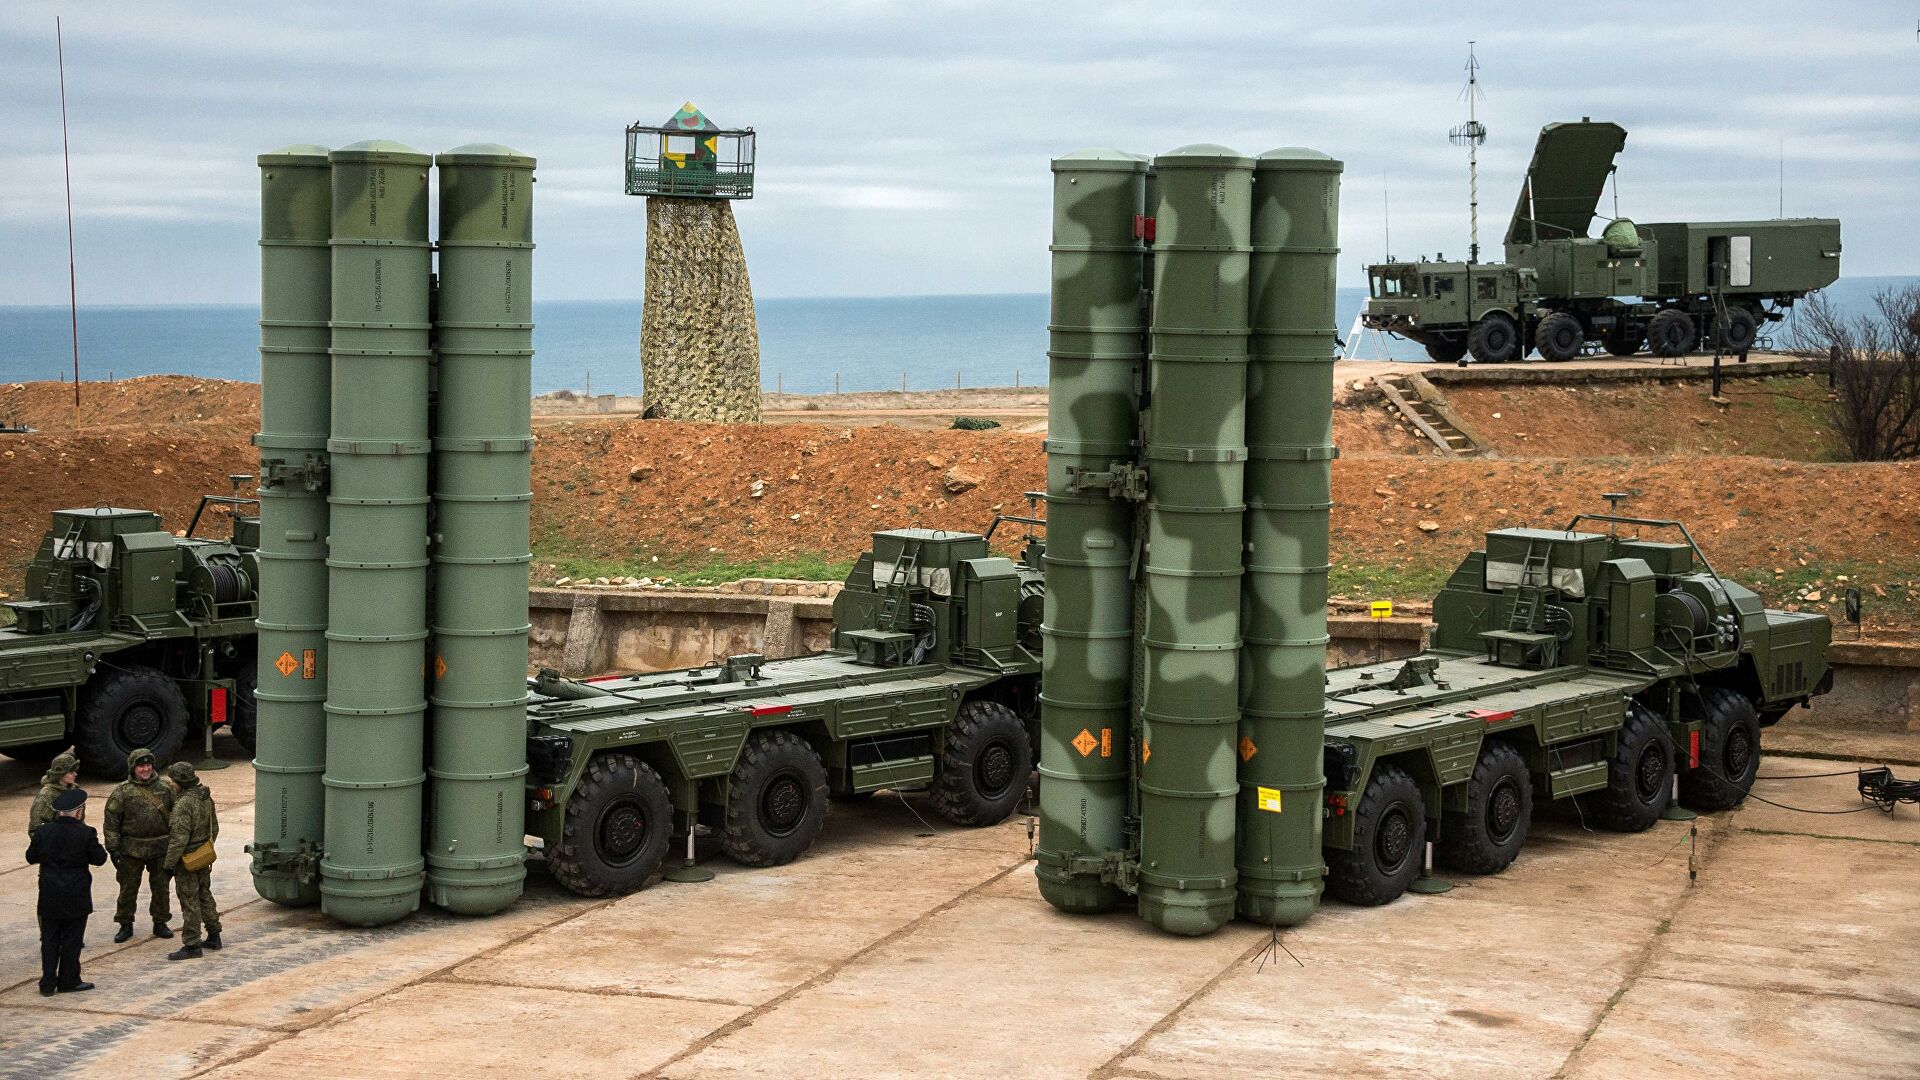 Թուրքիան մտադիր է Ռուսաստանից գնել հավելյալ զենիթային С-400 համակարգեր